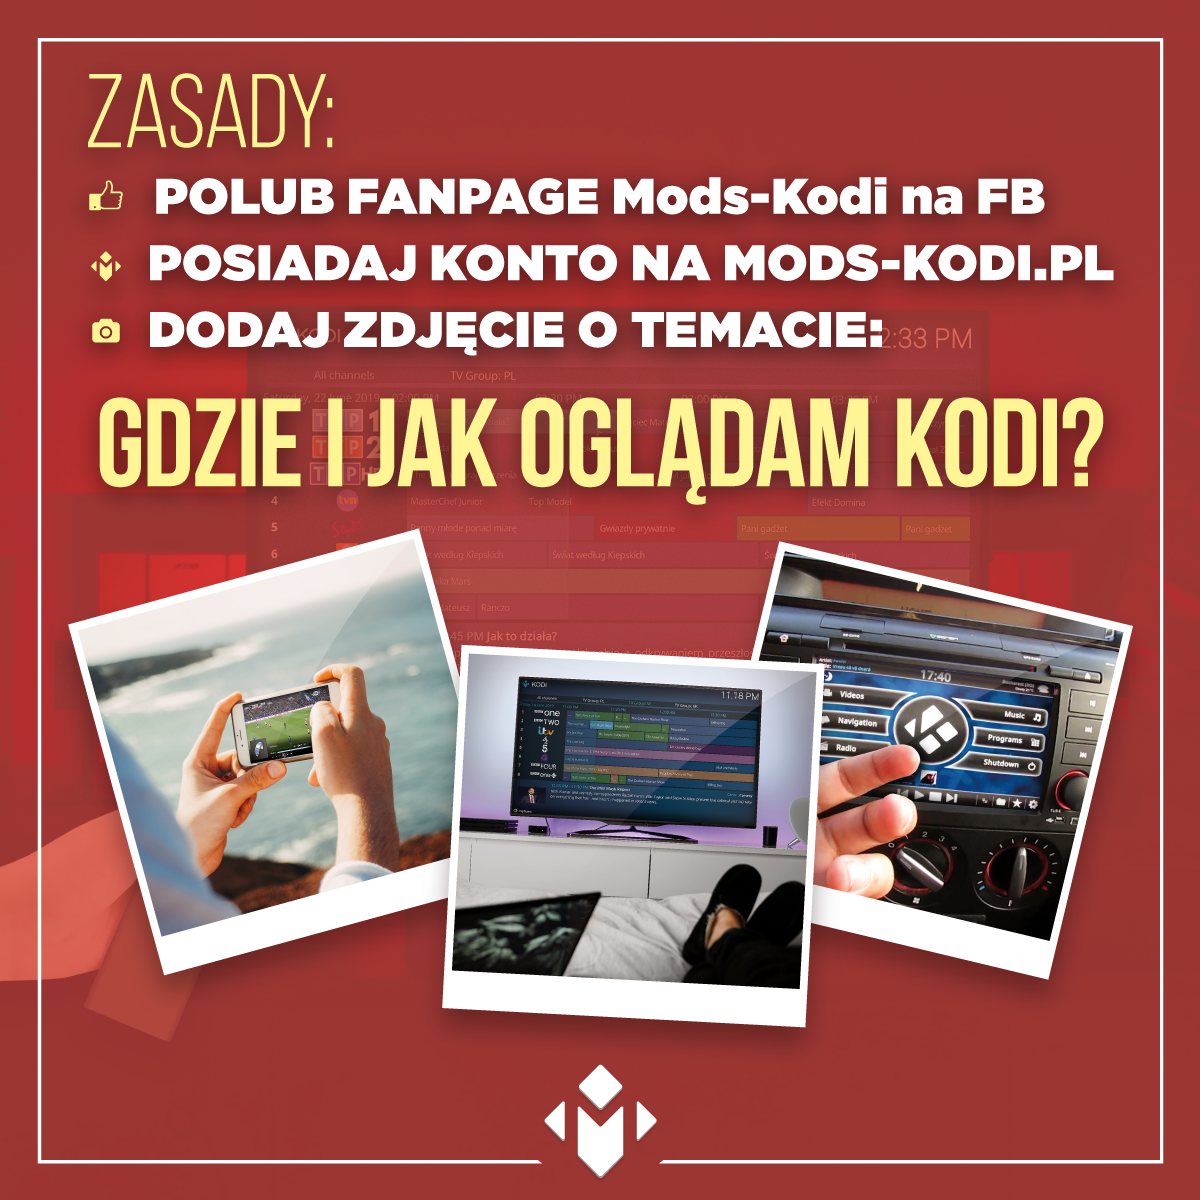 Konkurs na Mods-Kodi.pl